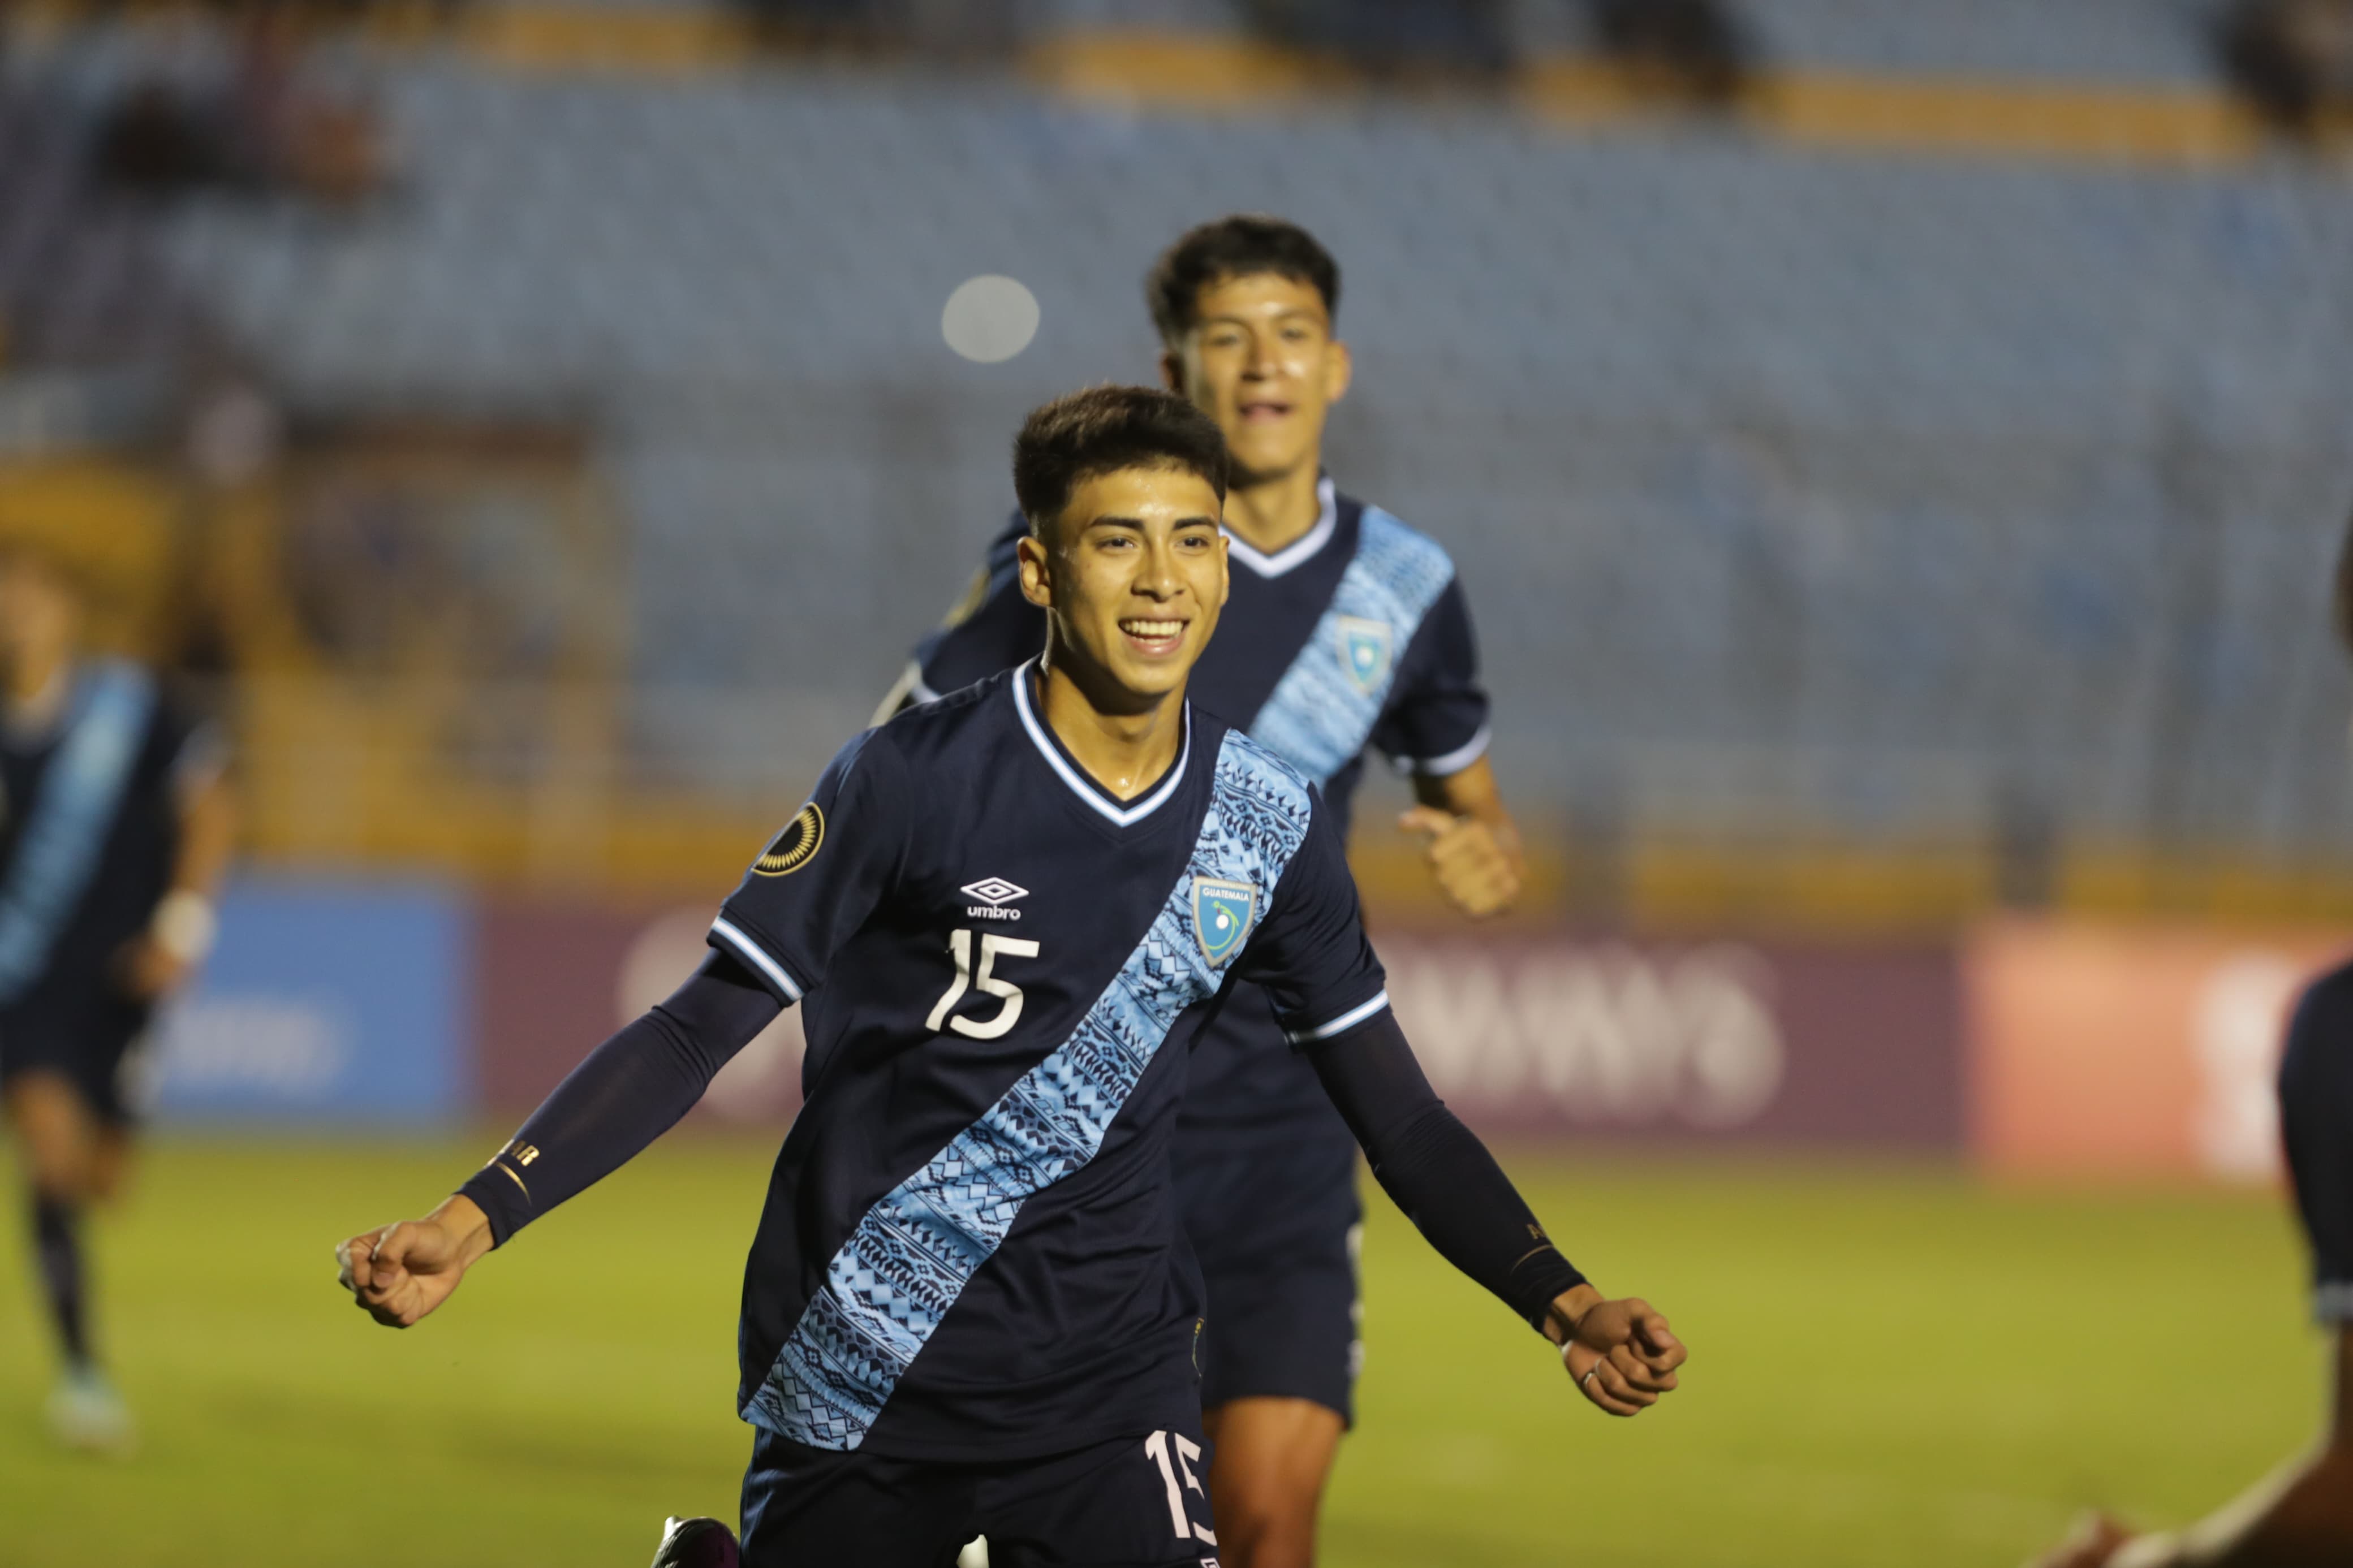 El jugador Carlos Aguilar, del Deportivo Malacateco celebra el primer gol de Guatemala en el partido ante San Martín.